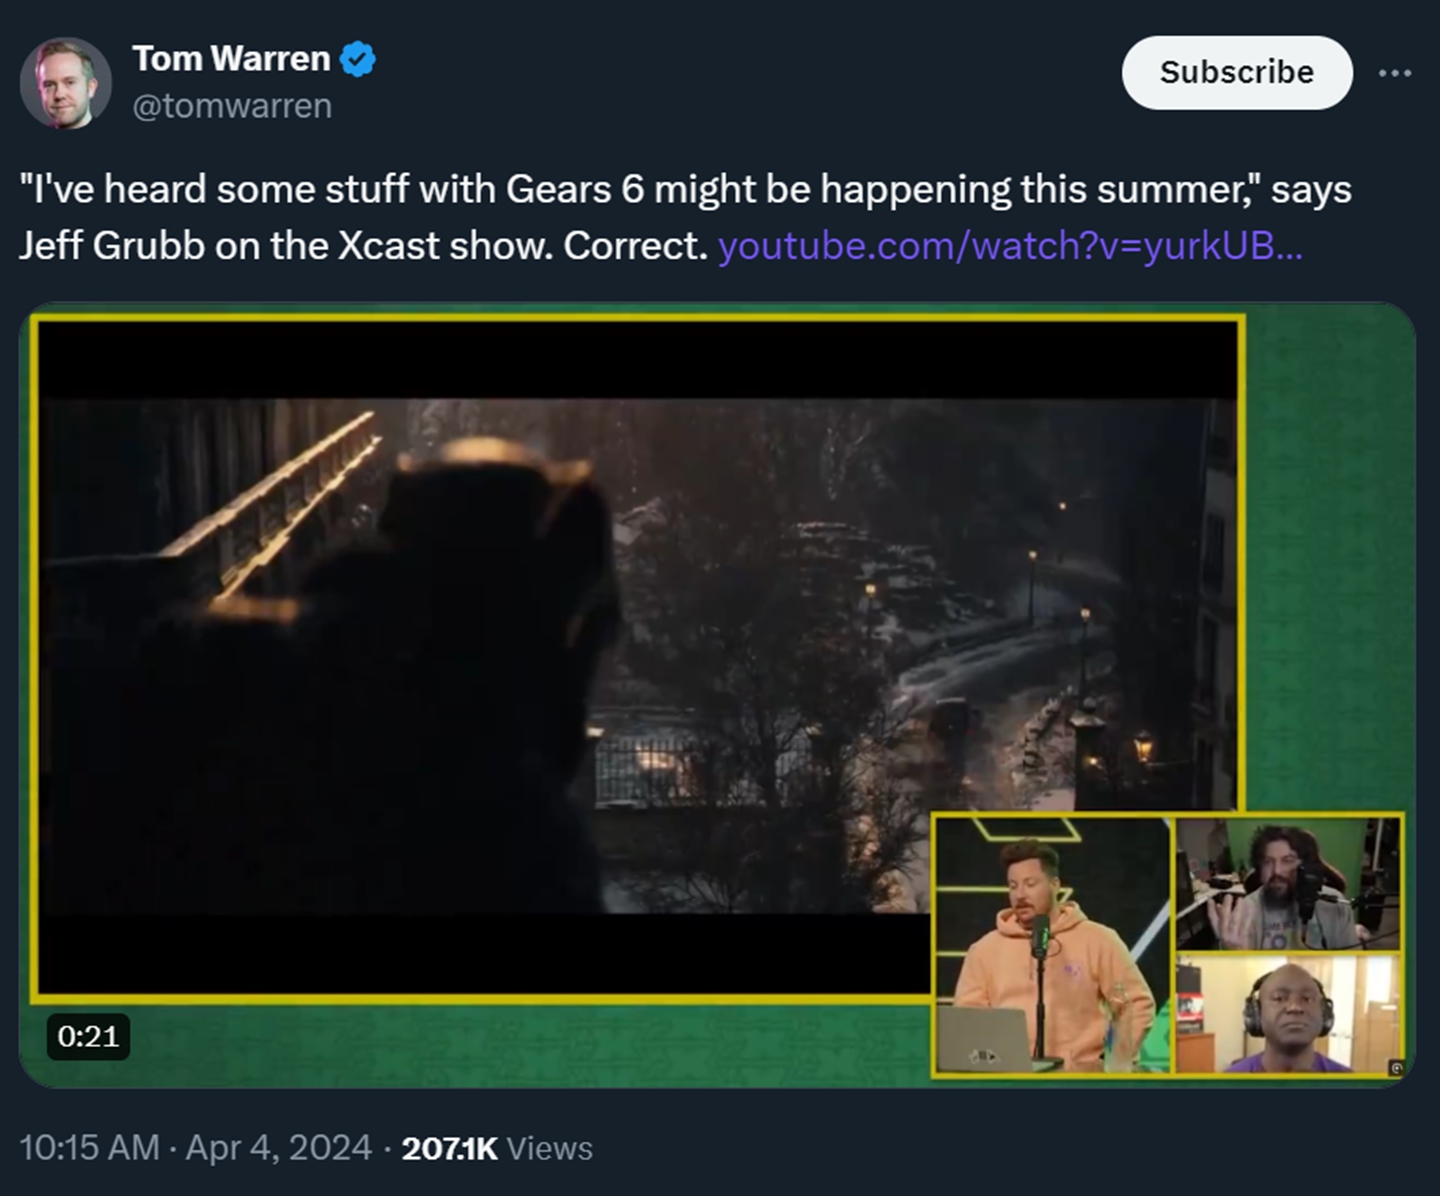 Os jornalistas Tom Warren e Jeff Grubb também afirmam que Gears of War 6 será revelado no meio do ano.